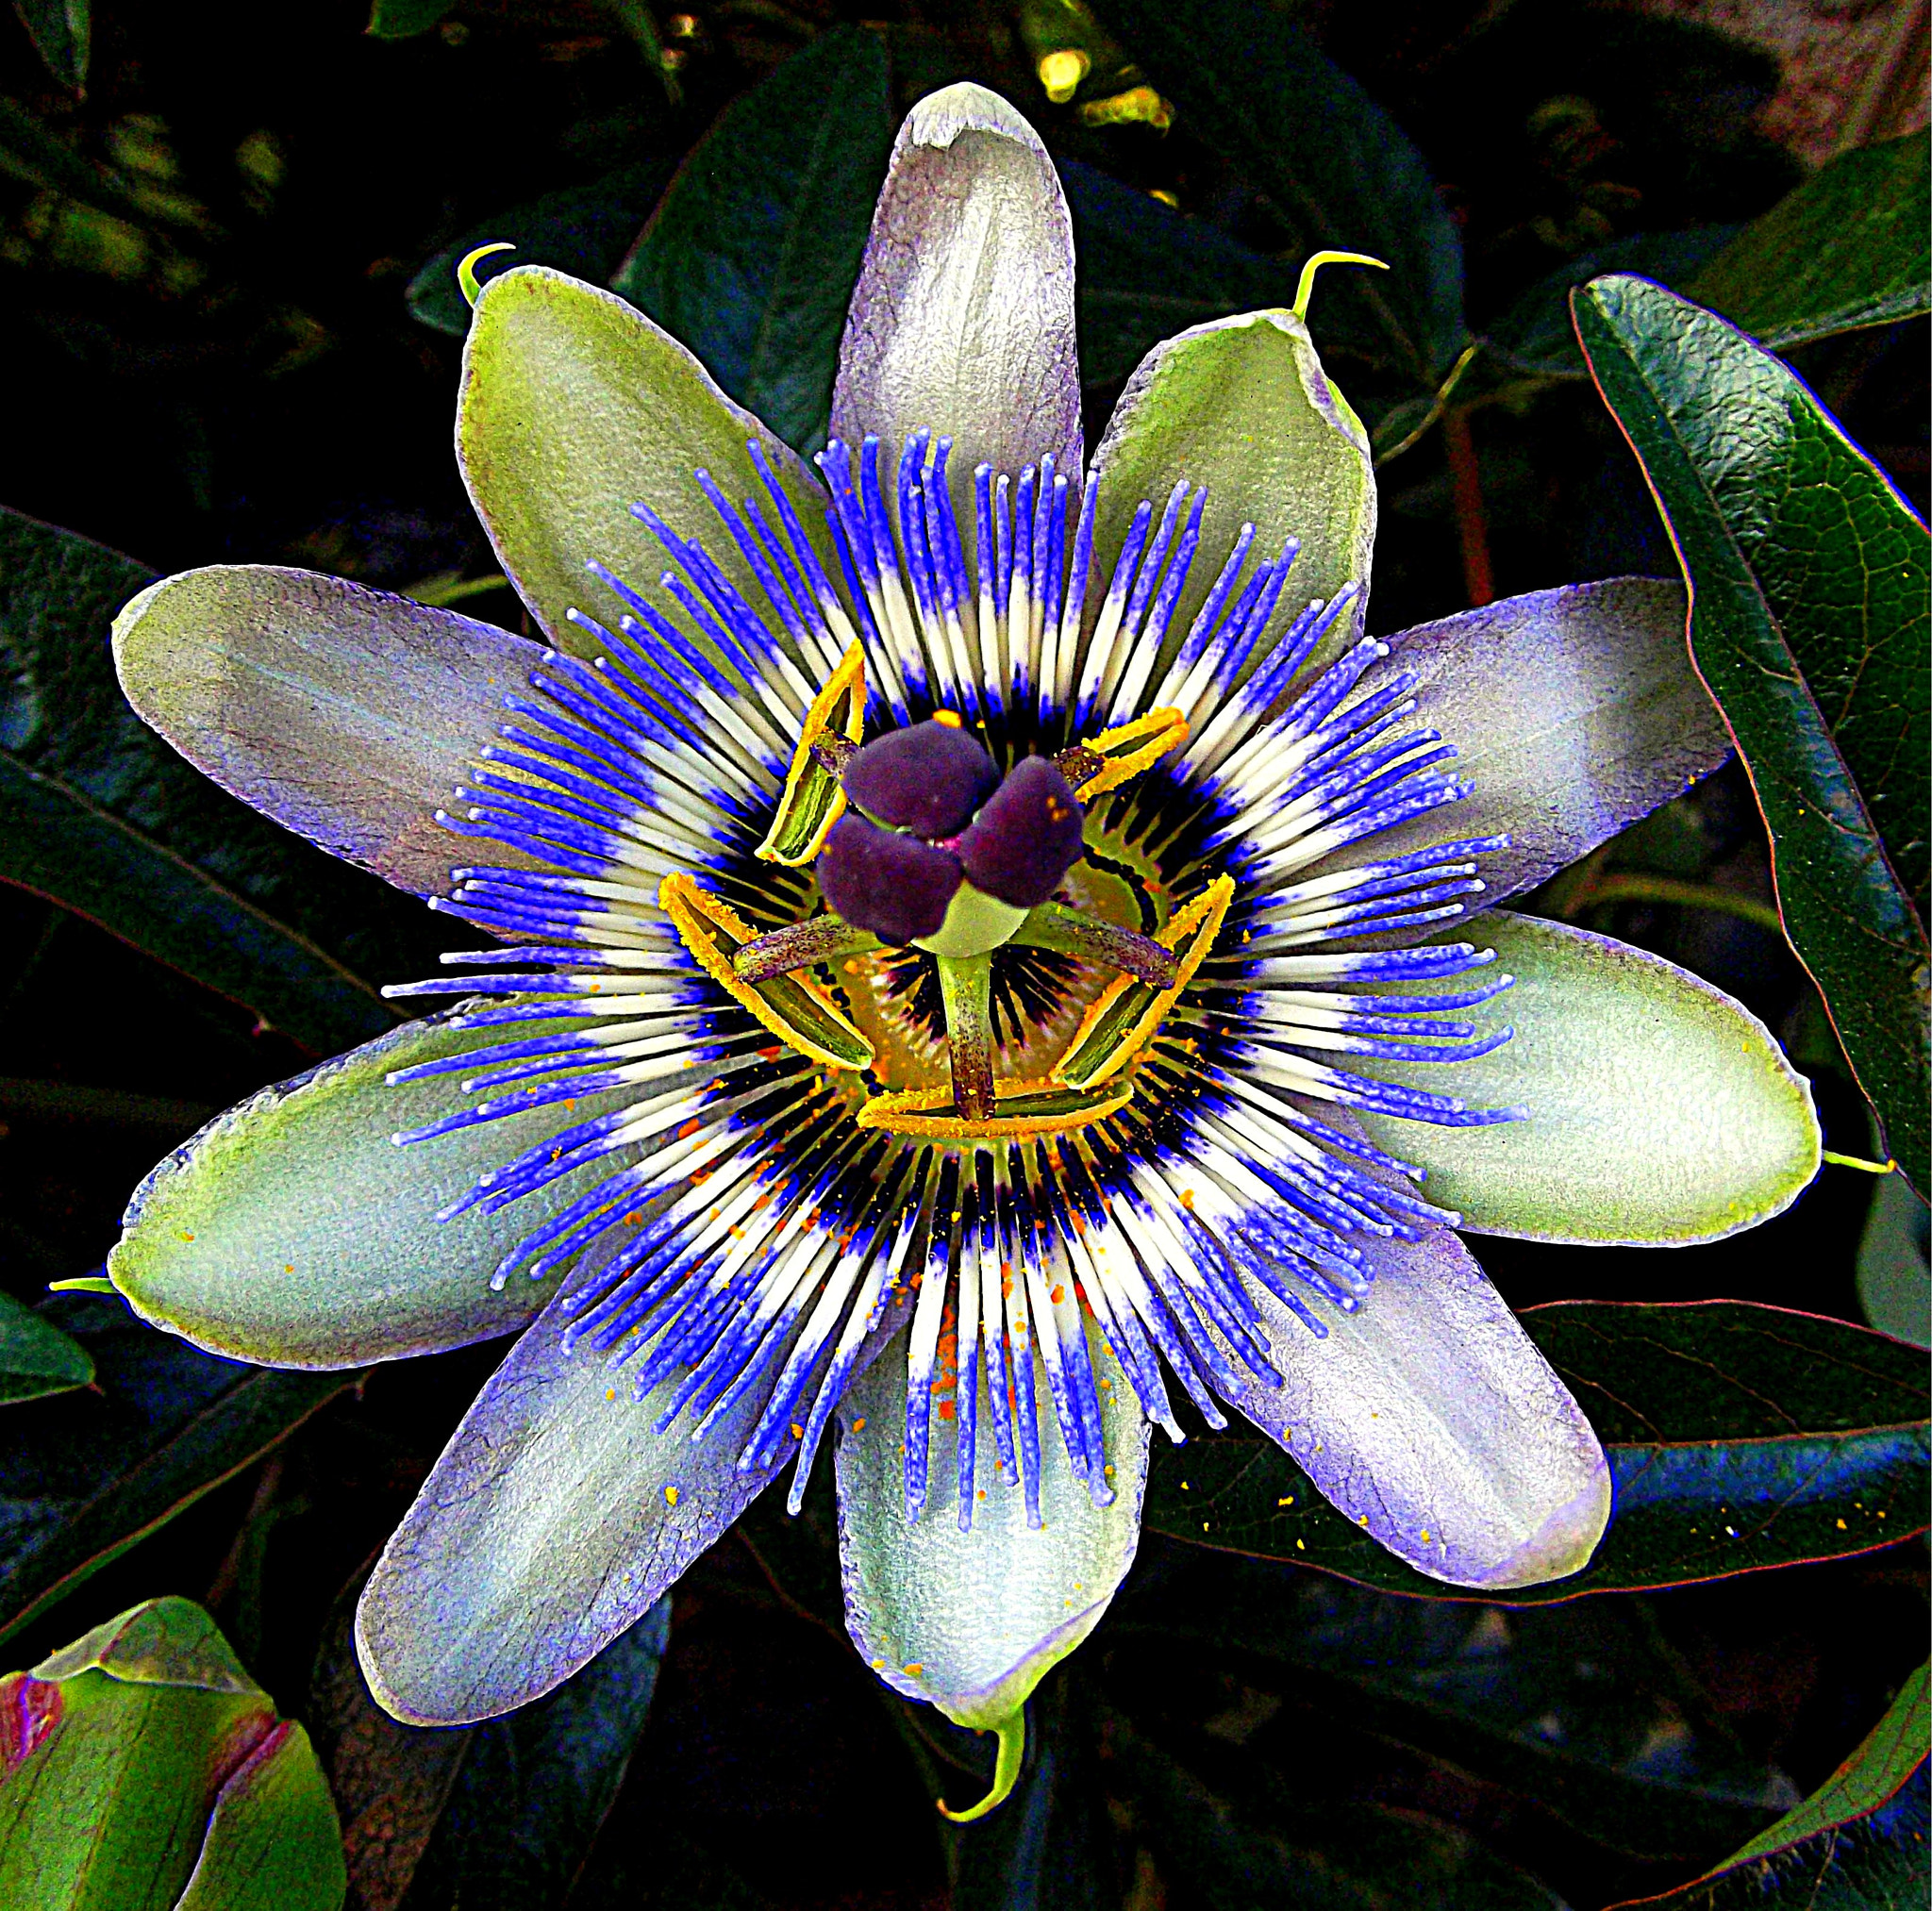 Fujifilm FinePix JX250 sample photo. Passionflower - passiflora caerulea, fiore della passione. photography